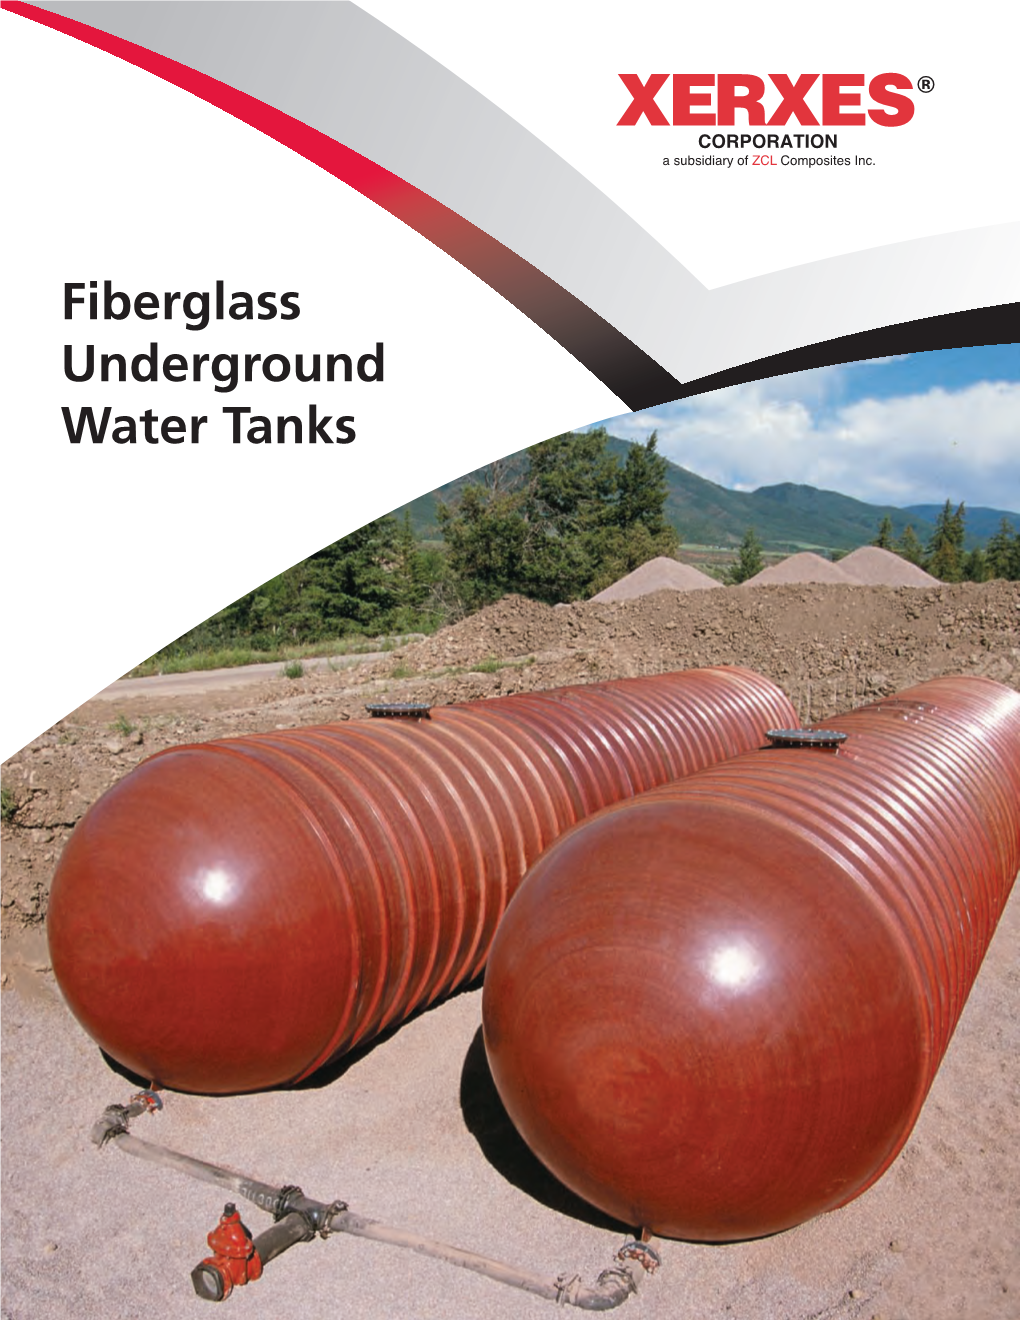 Fiberglass Underground Water Tanks